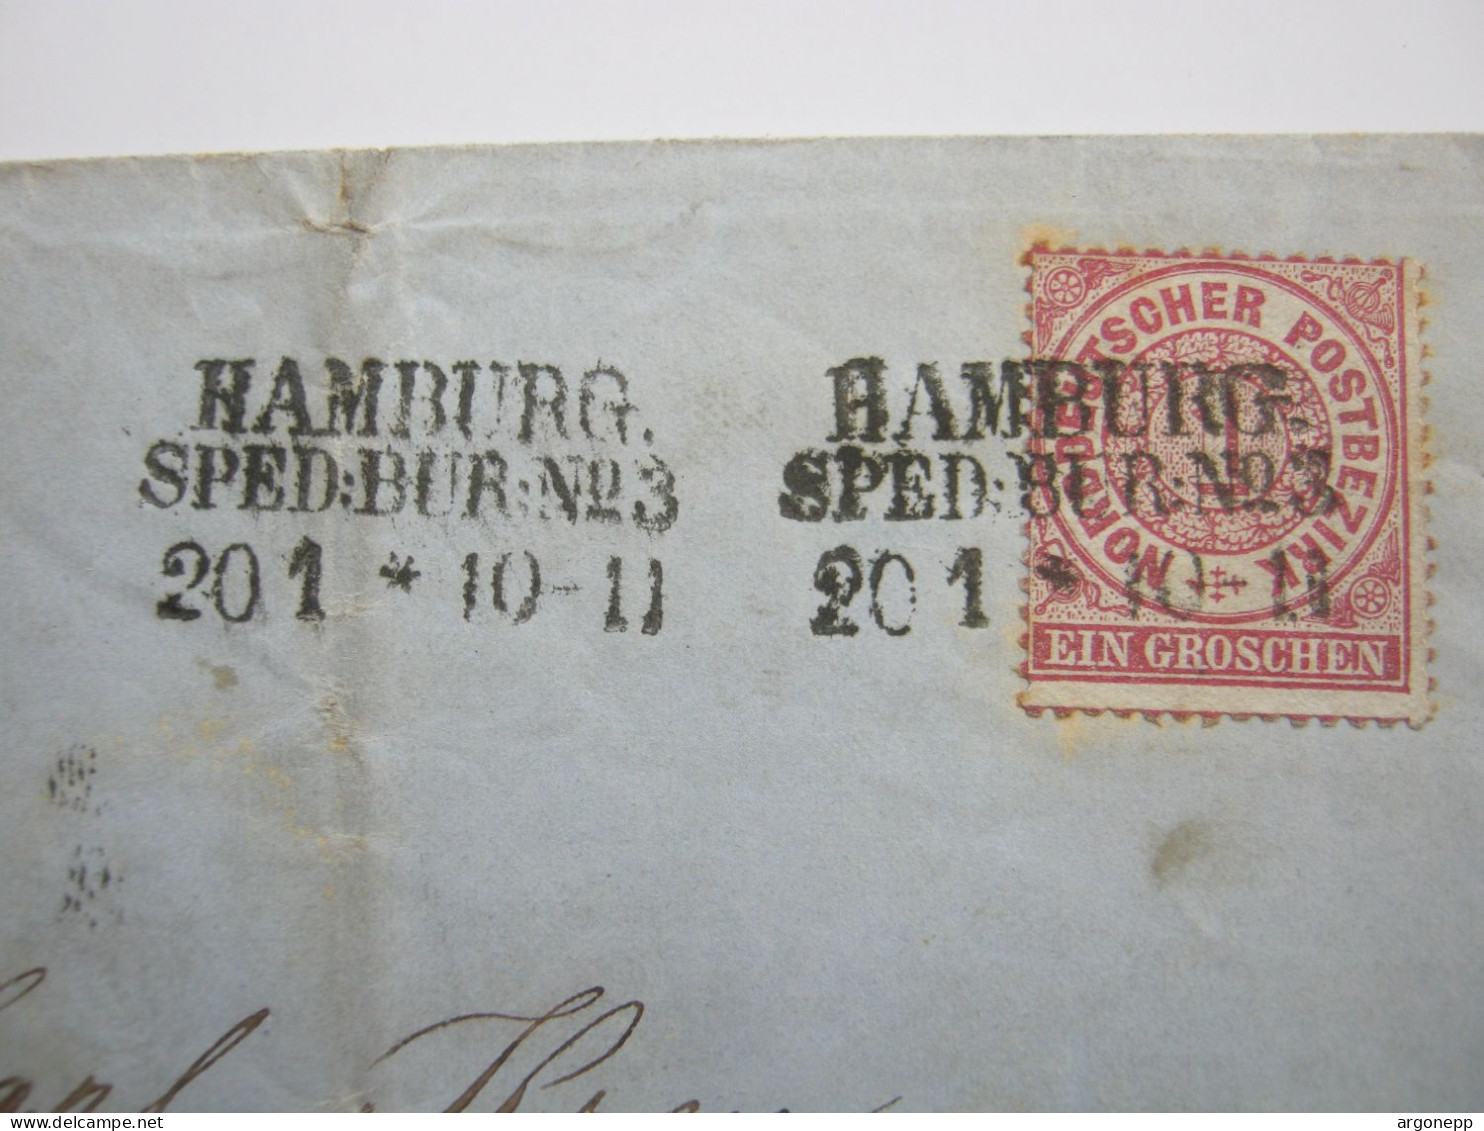 HAMBURG , Brief Mit Seltenem 3 Zeiler HAMBURG - Sped.Bur. No. 3 , Seltener Stempel - Hamburg